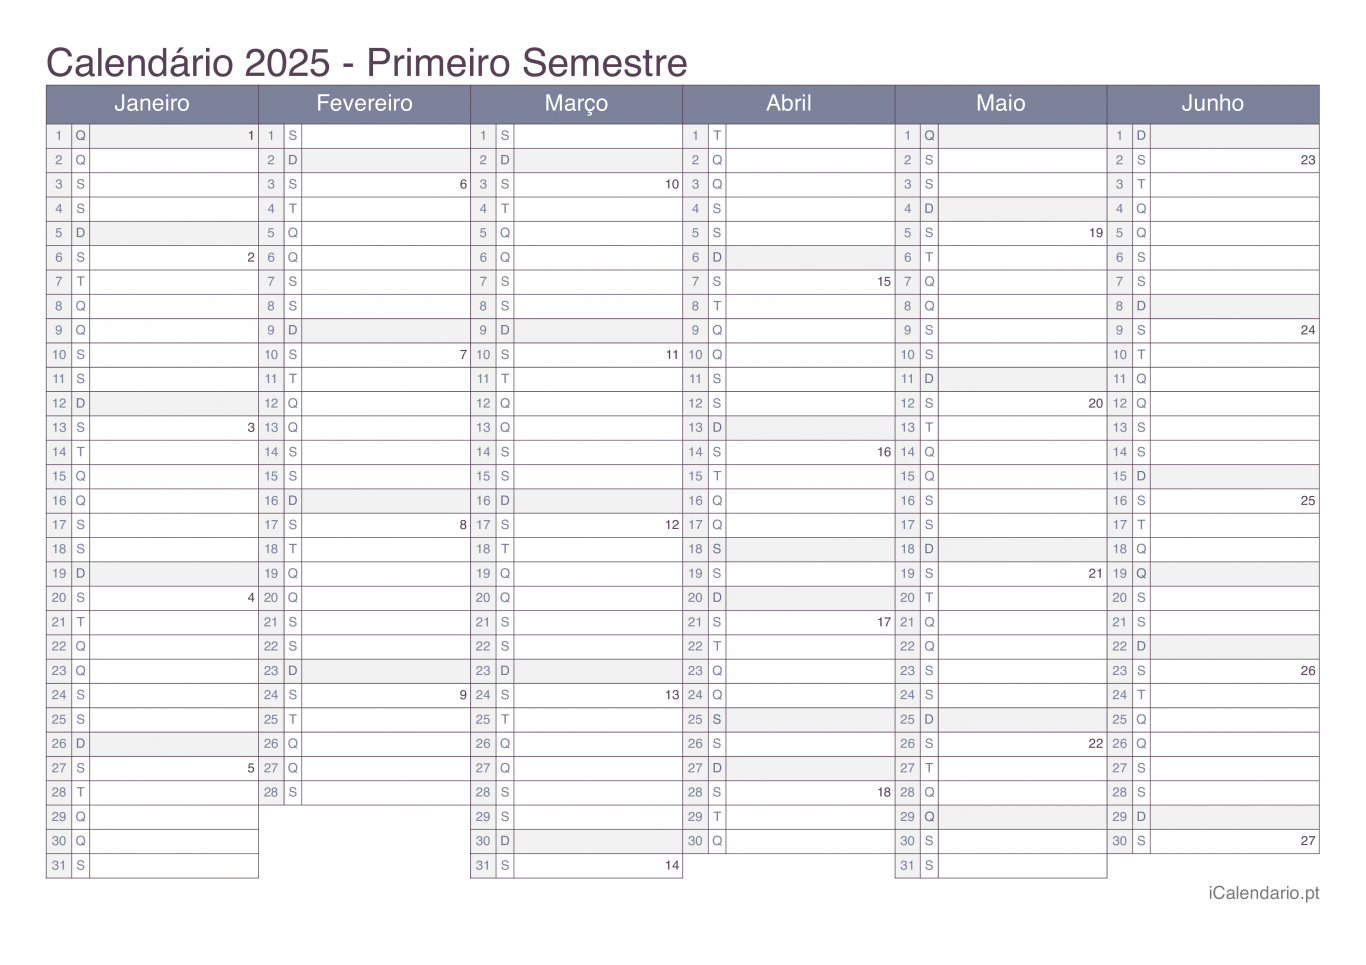 Calendário por semestre com números da semana 2025 - Office